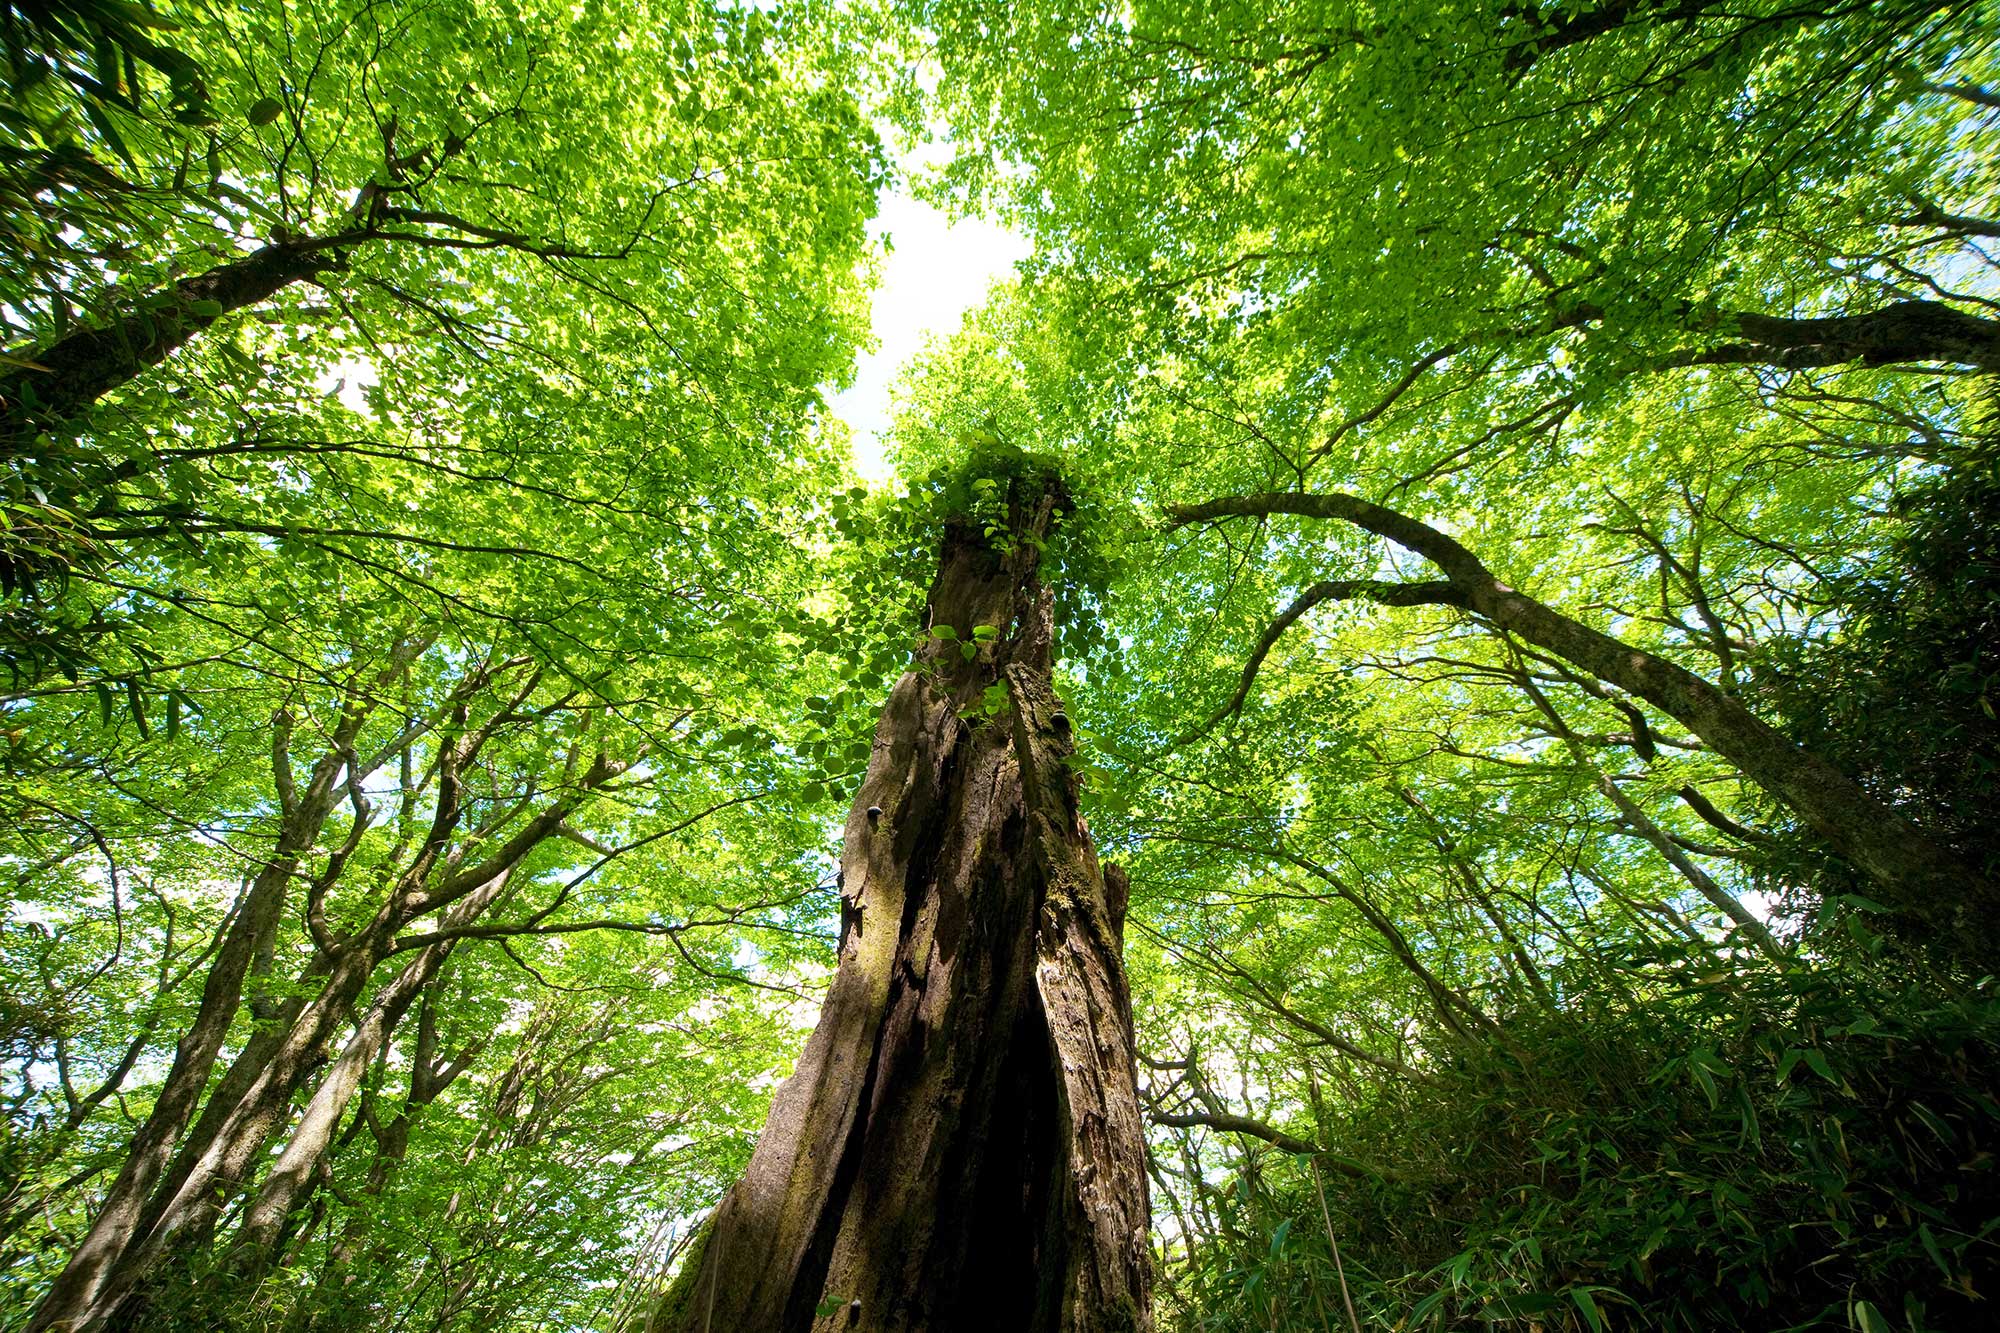 大分・宮崎県境に長い尾根を連ねる祖母・傾山系のブナ林と老木。